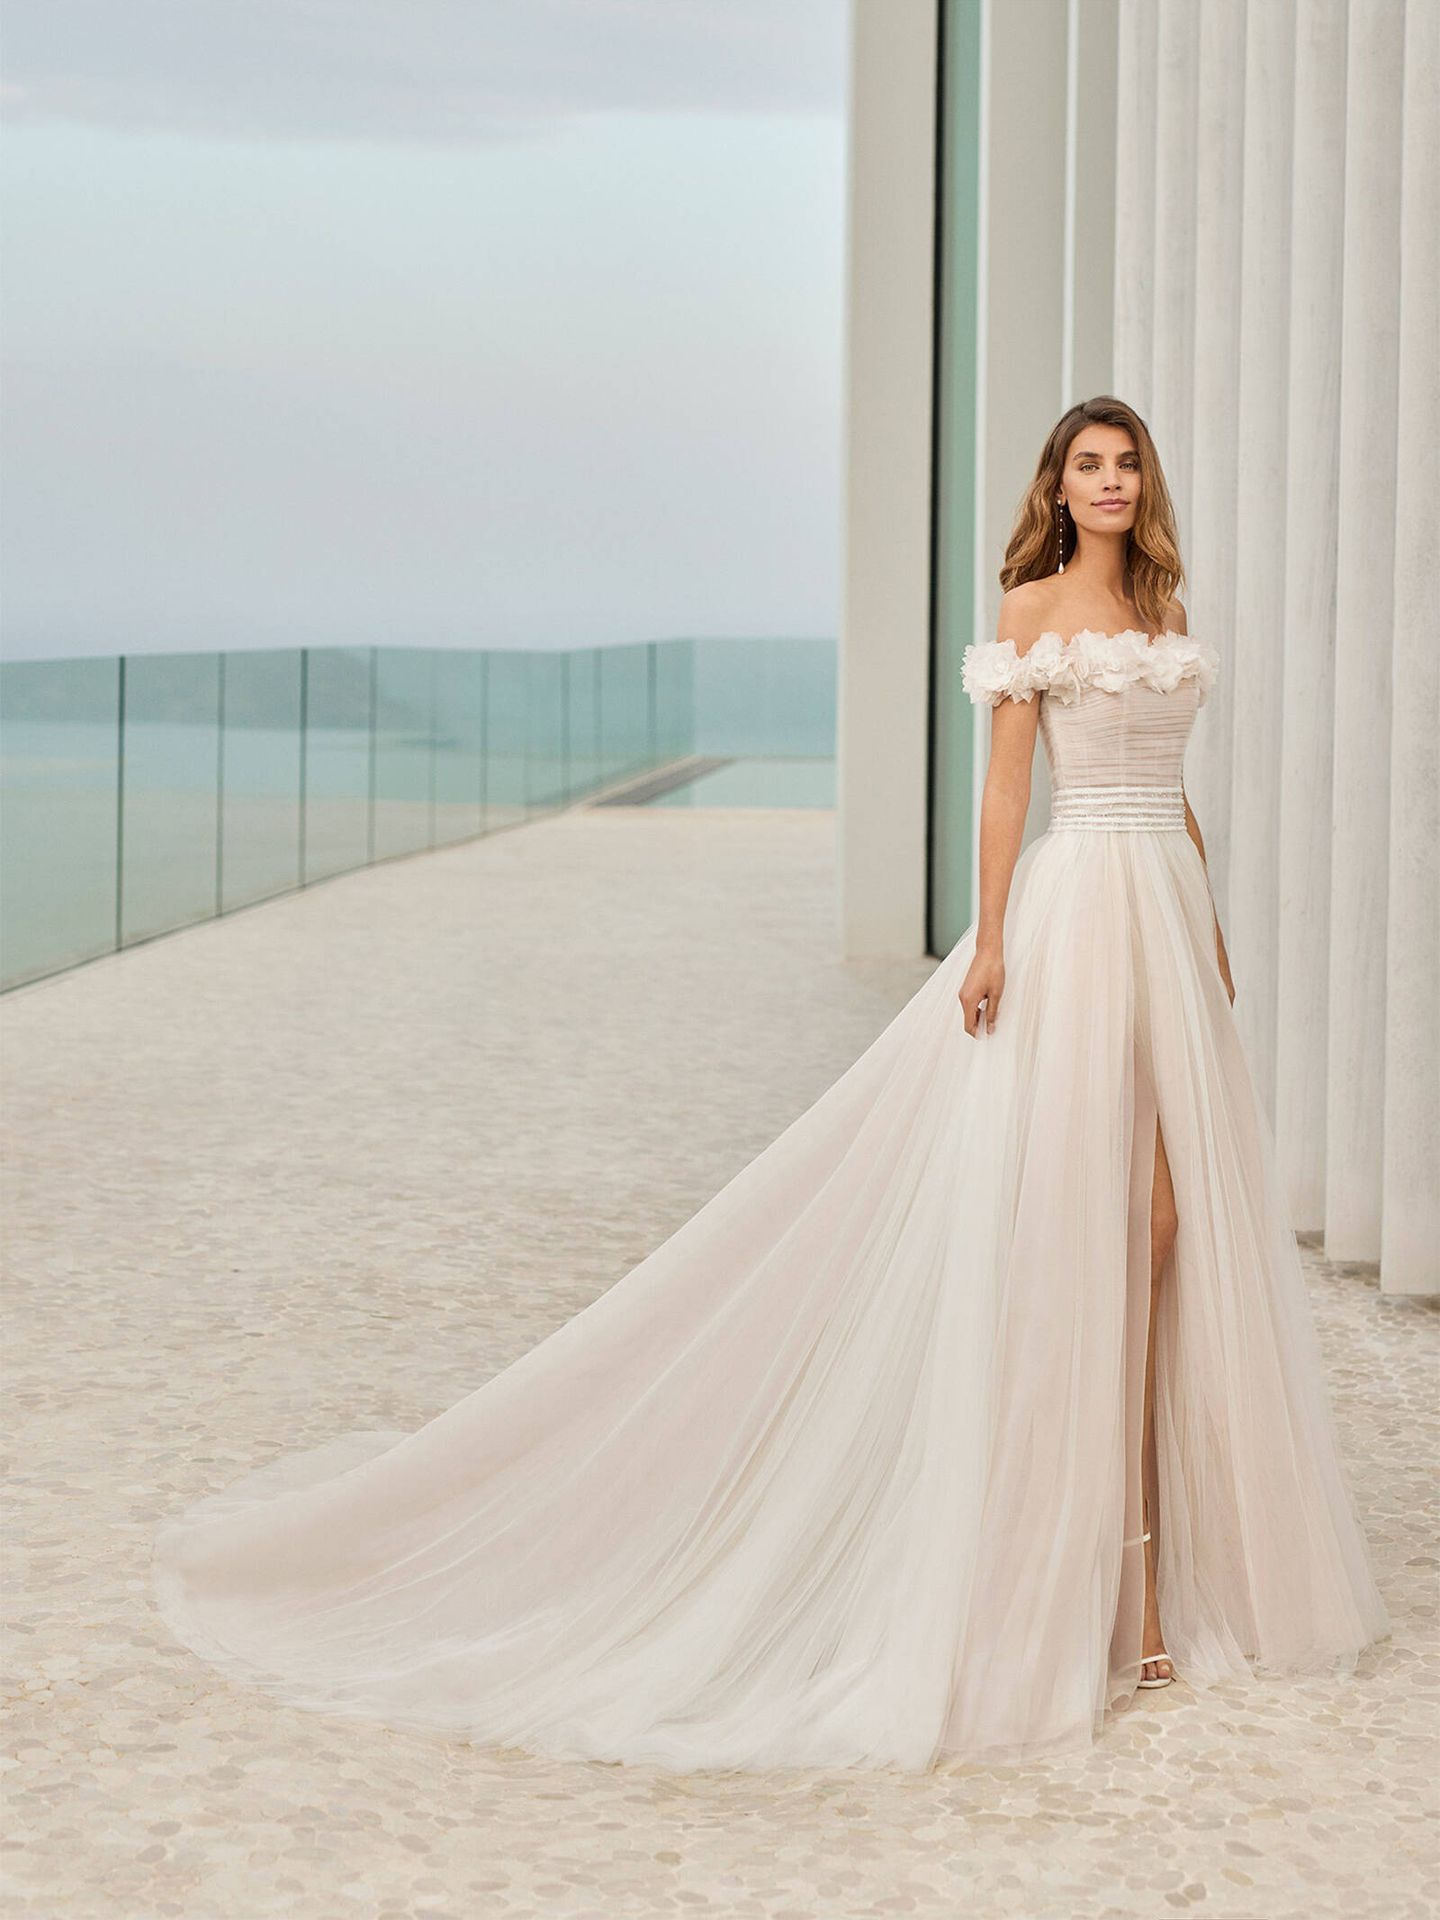 Vestido de novia de la colección 2022 de Rosa Clará. (Cortesía)